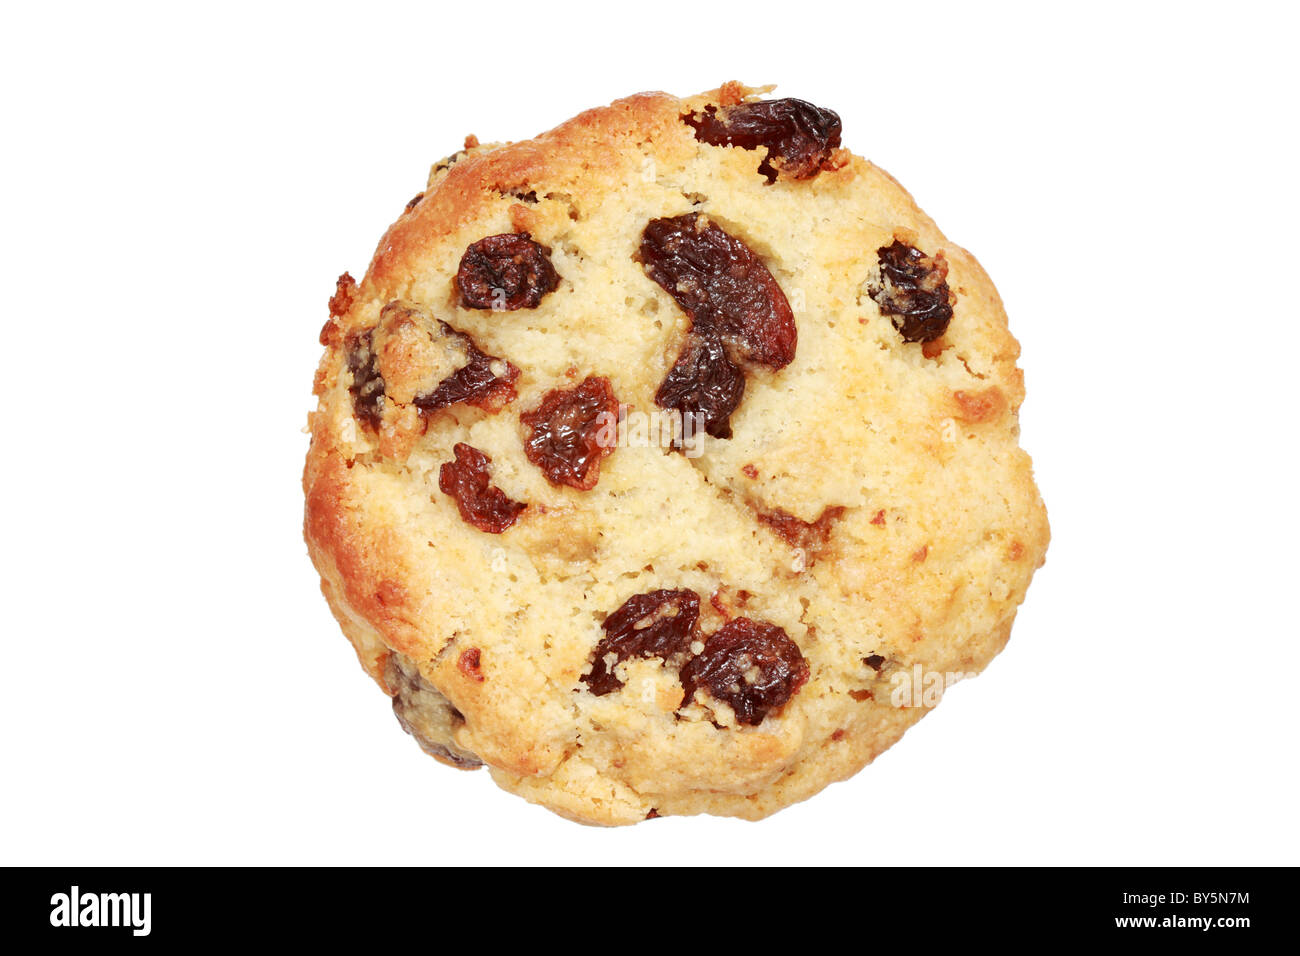 toasted raisin scone isolated on white background Stock Photo